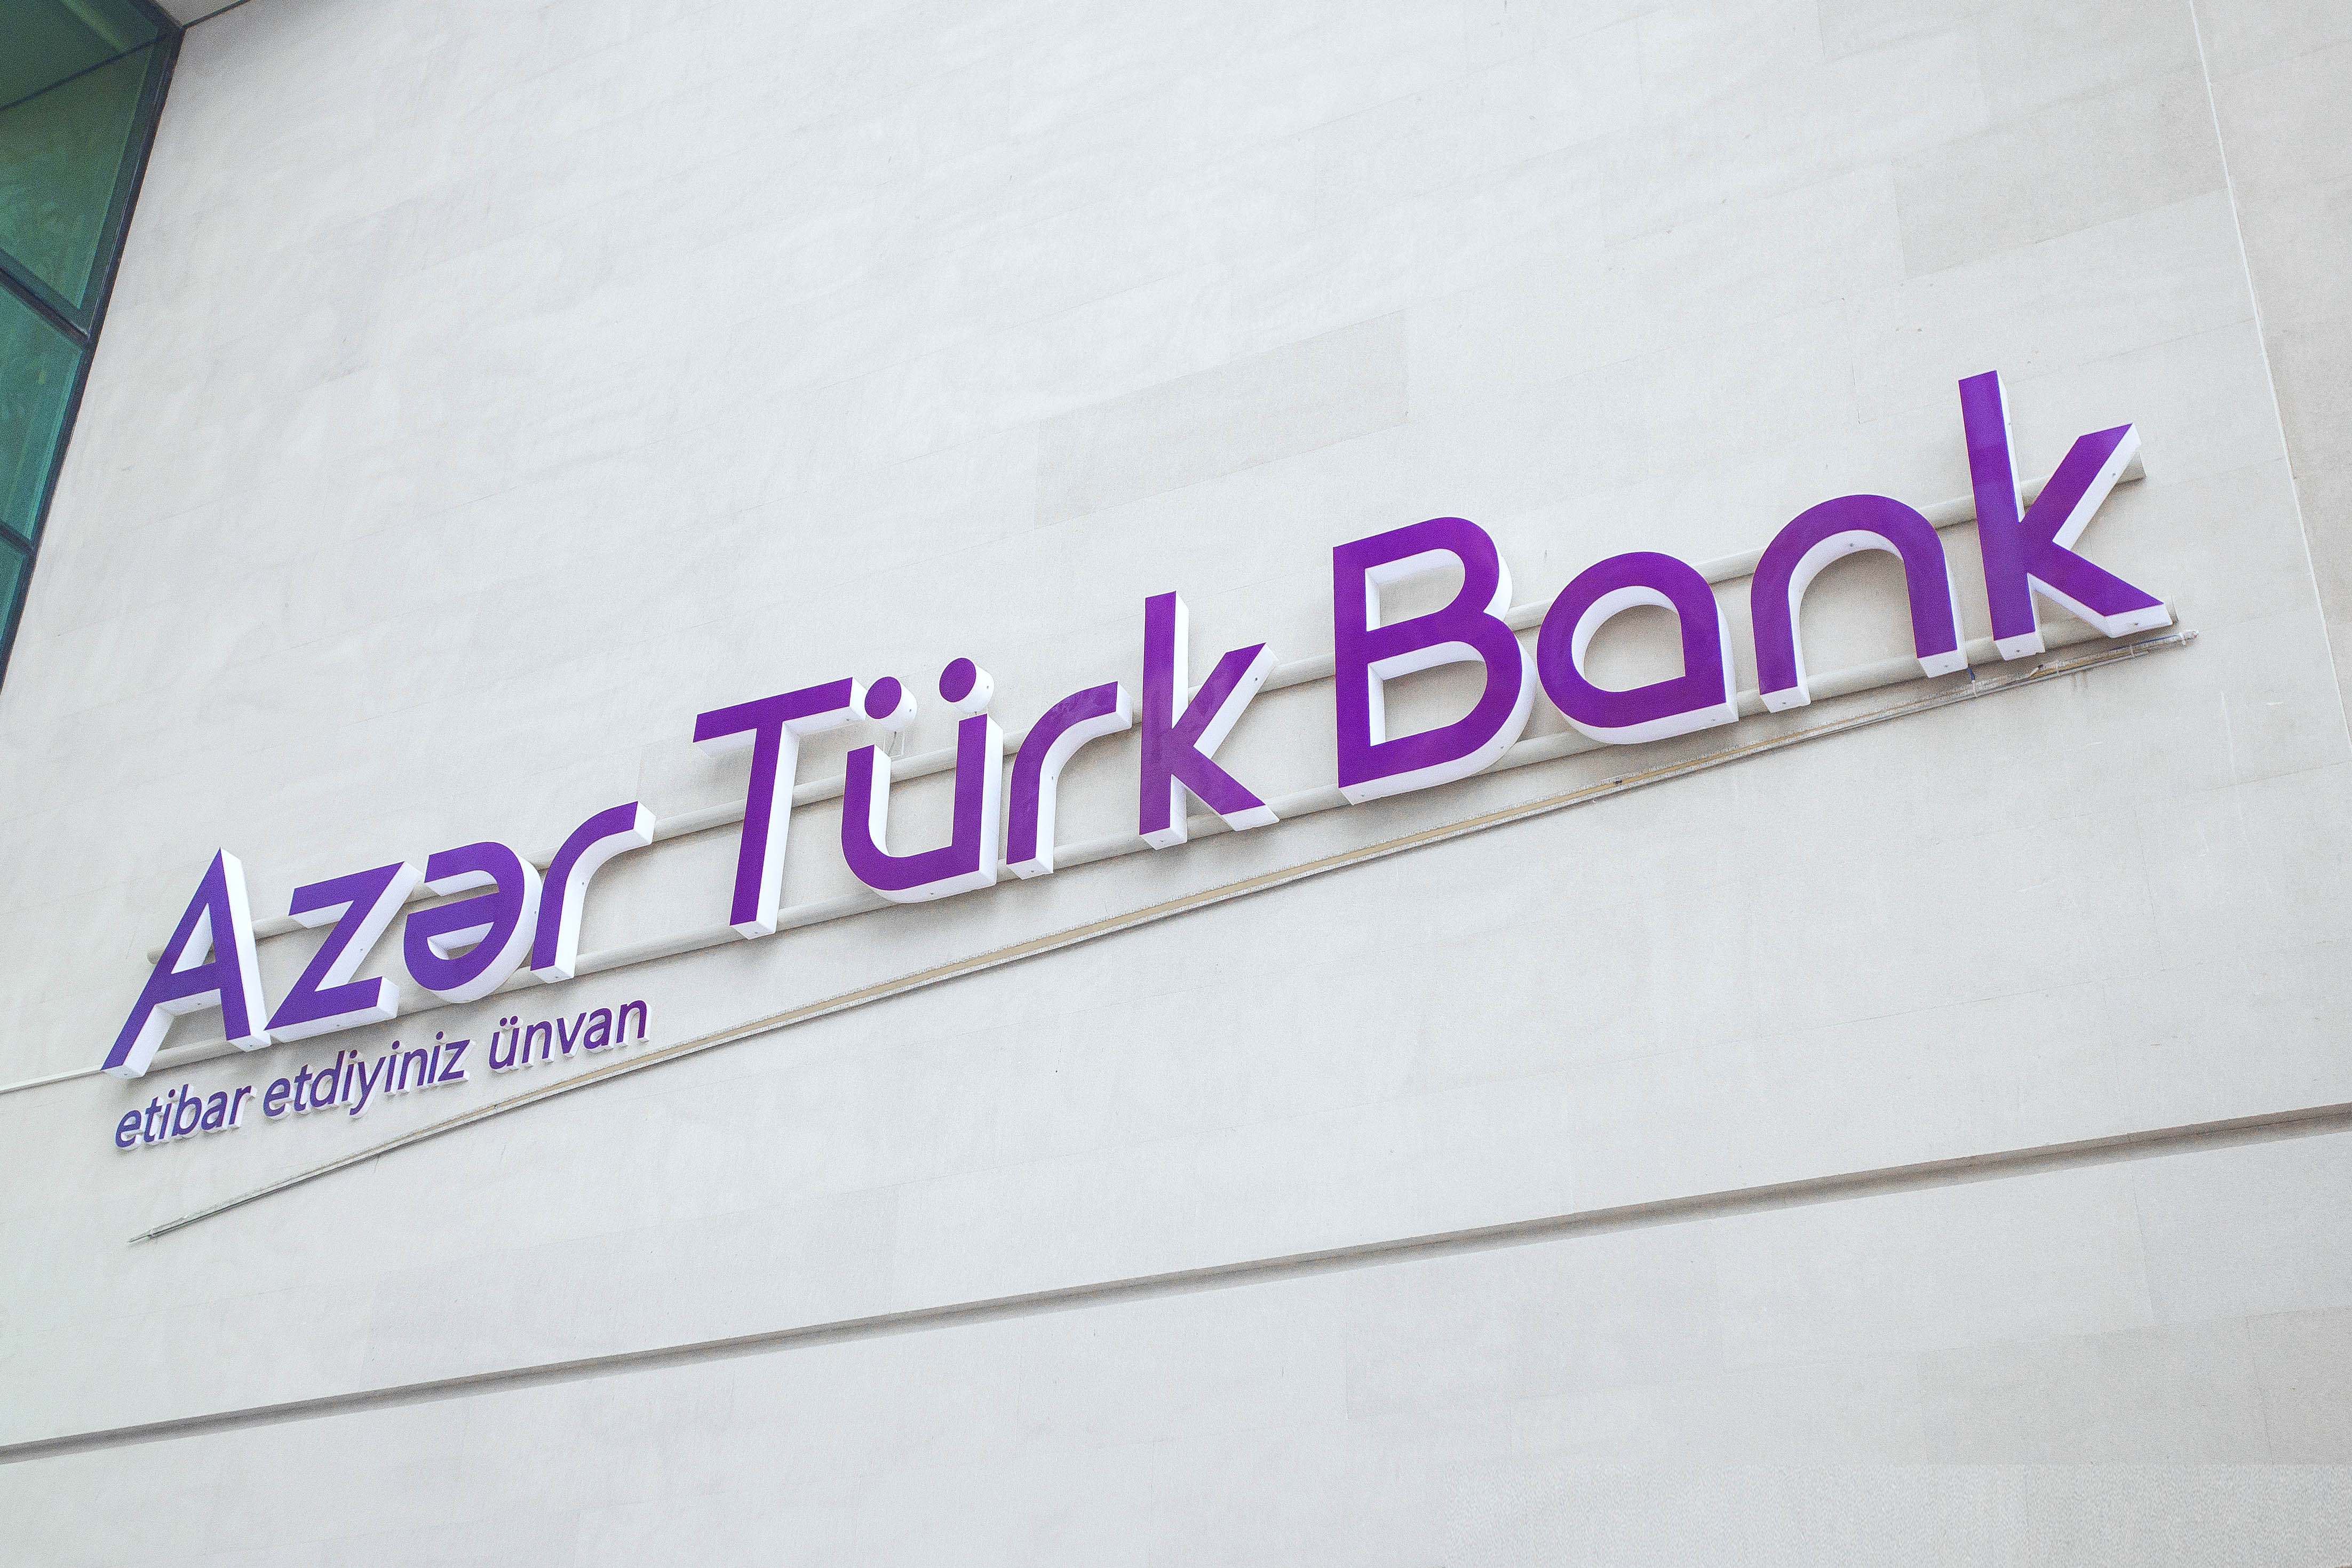 Azər Türk Bank müştərilərə yeni və daha ucuz ödəniş kartı təklif edir